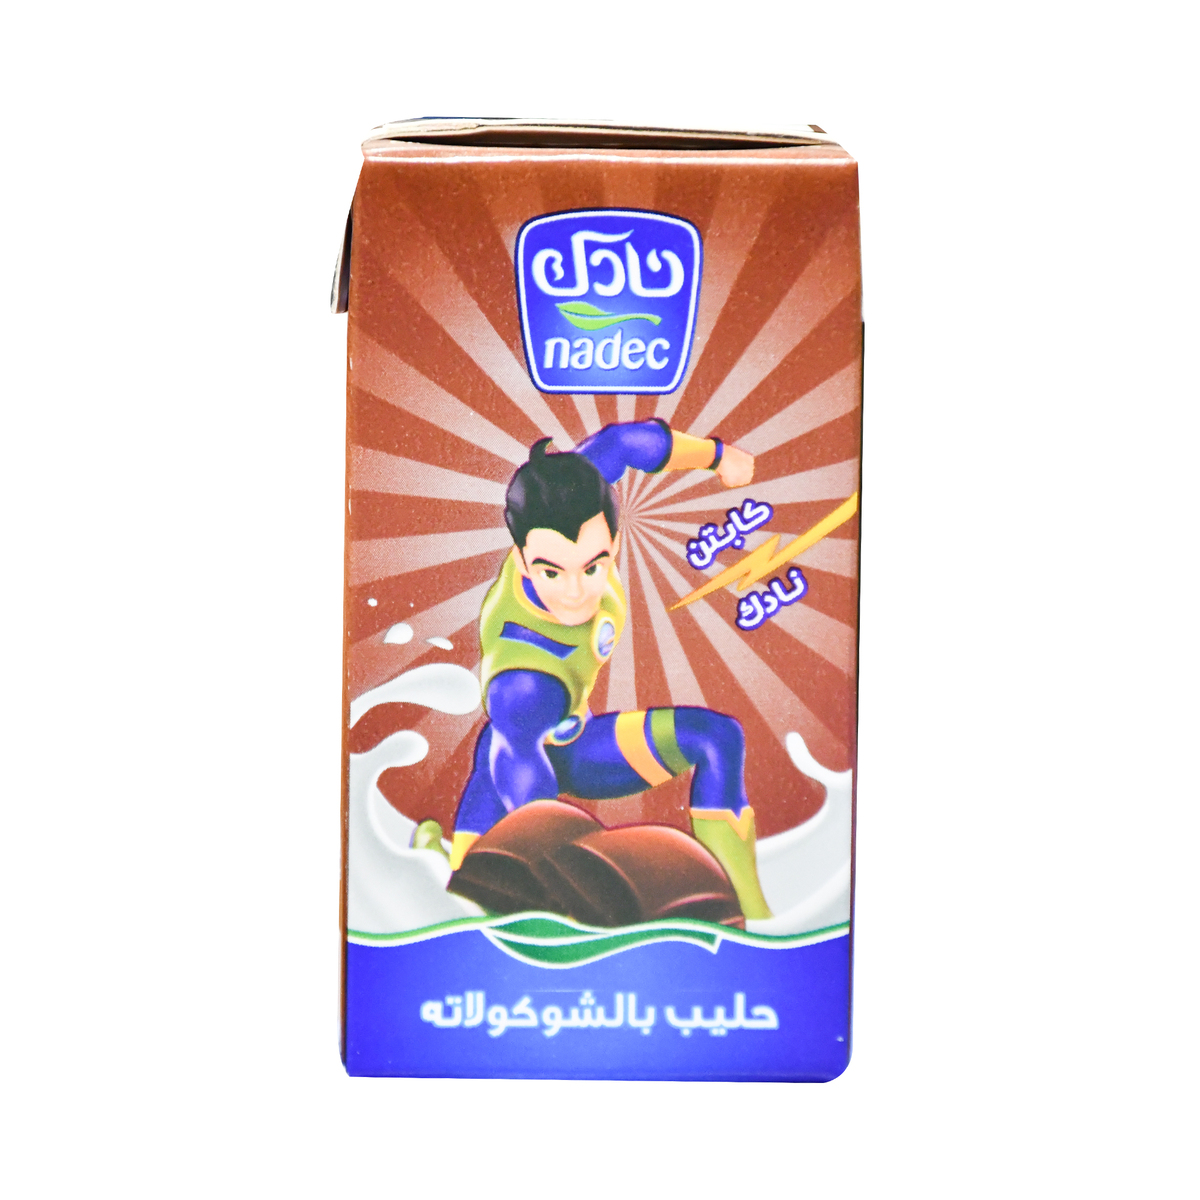 اشتري قم بشراء نادك حليب مبستر بالشوكولاتة 125 مل Online at Best Price من الموقع - من لولو هايبر ماركت UHT Flvrd Milk Drink في الكويت